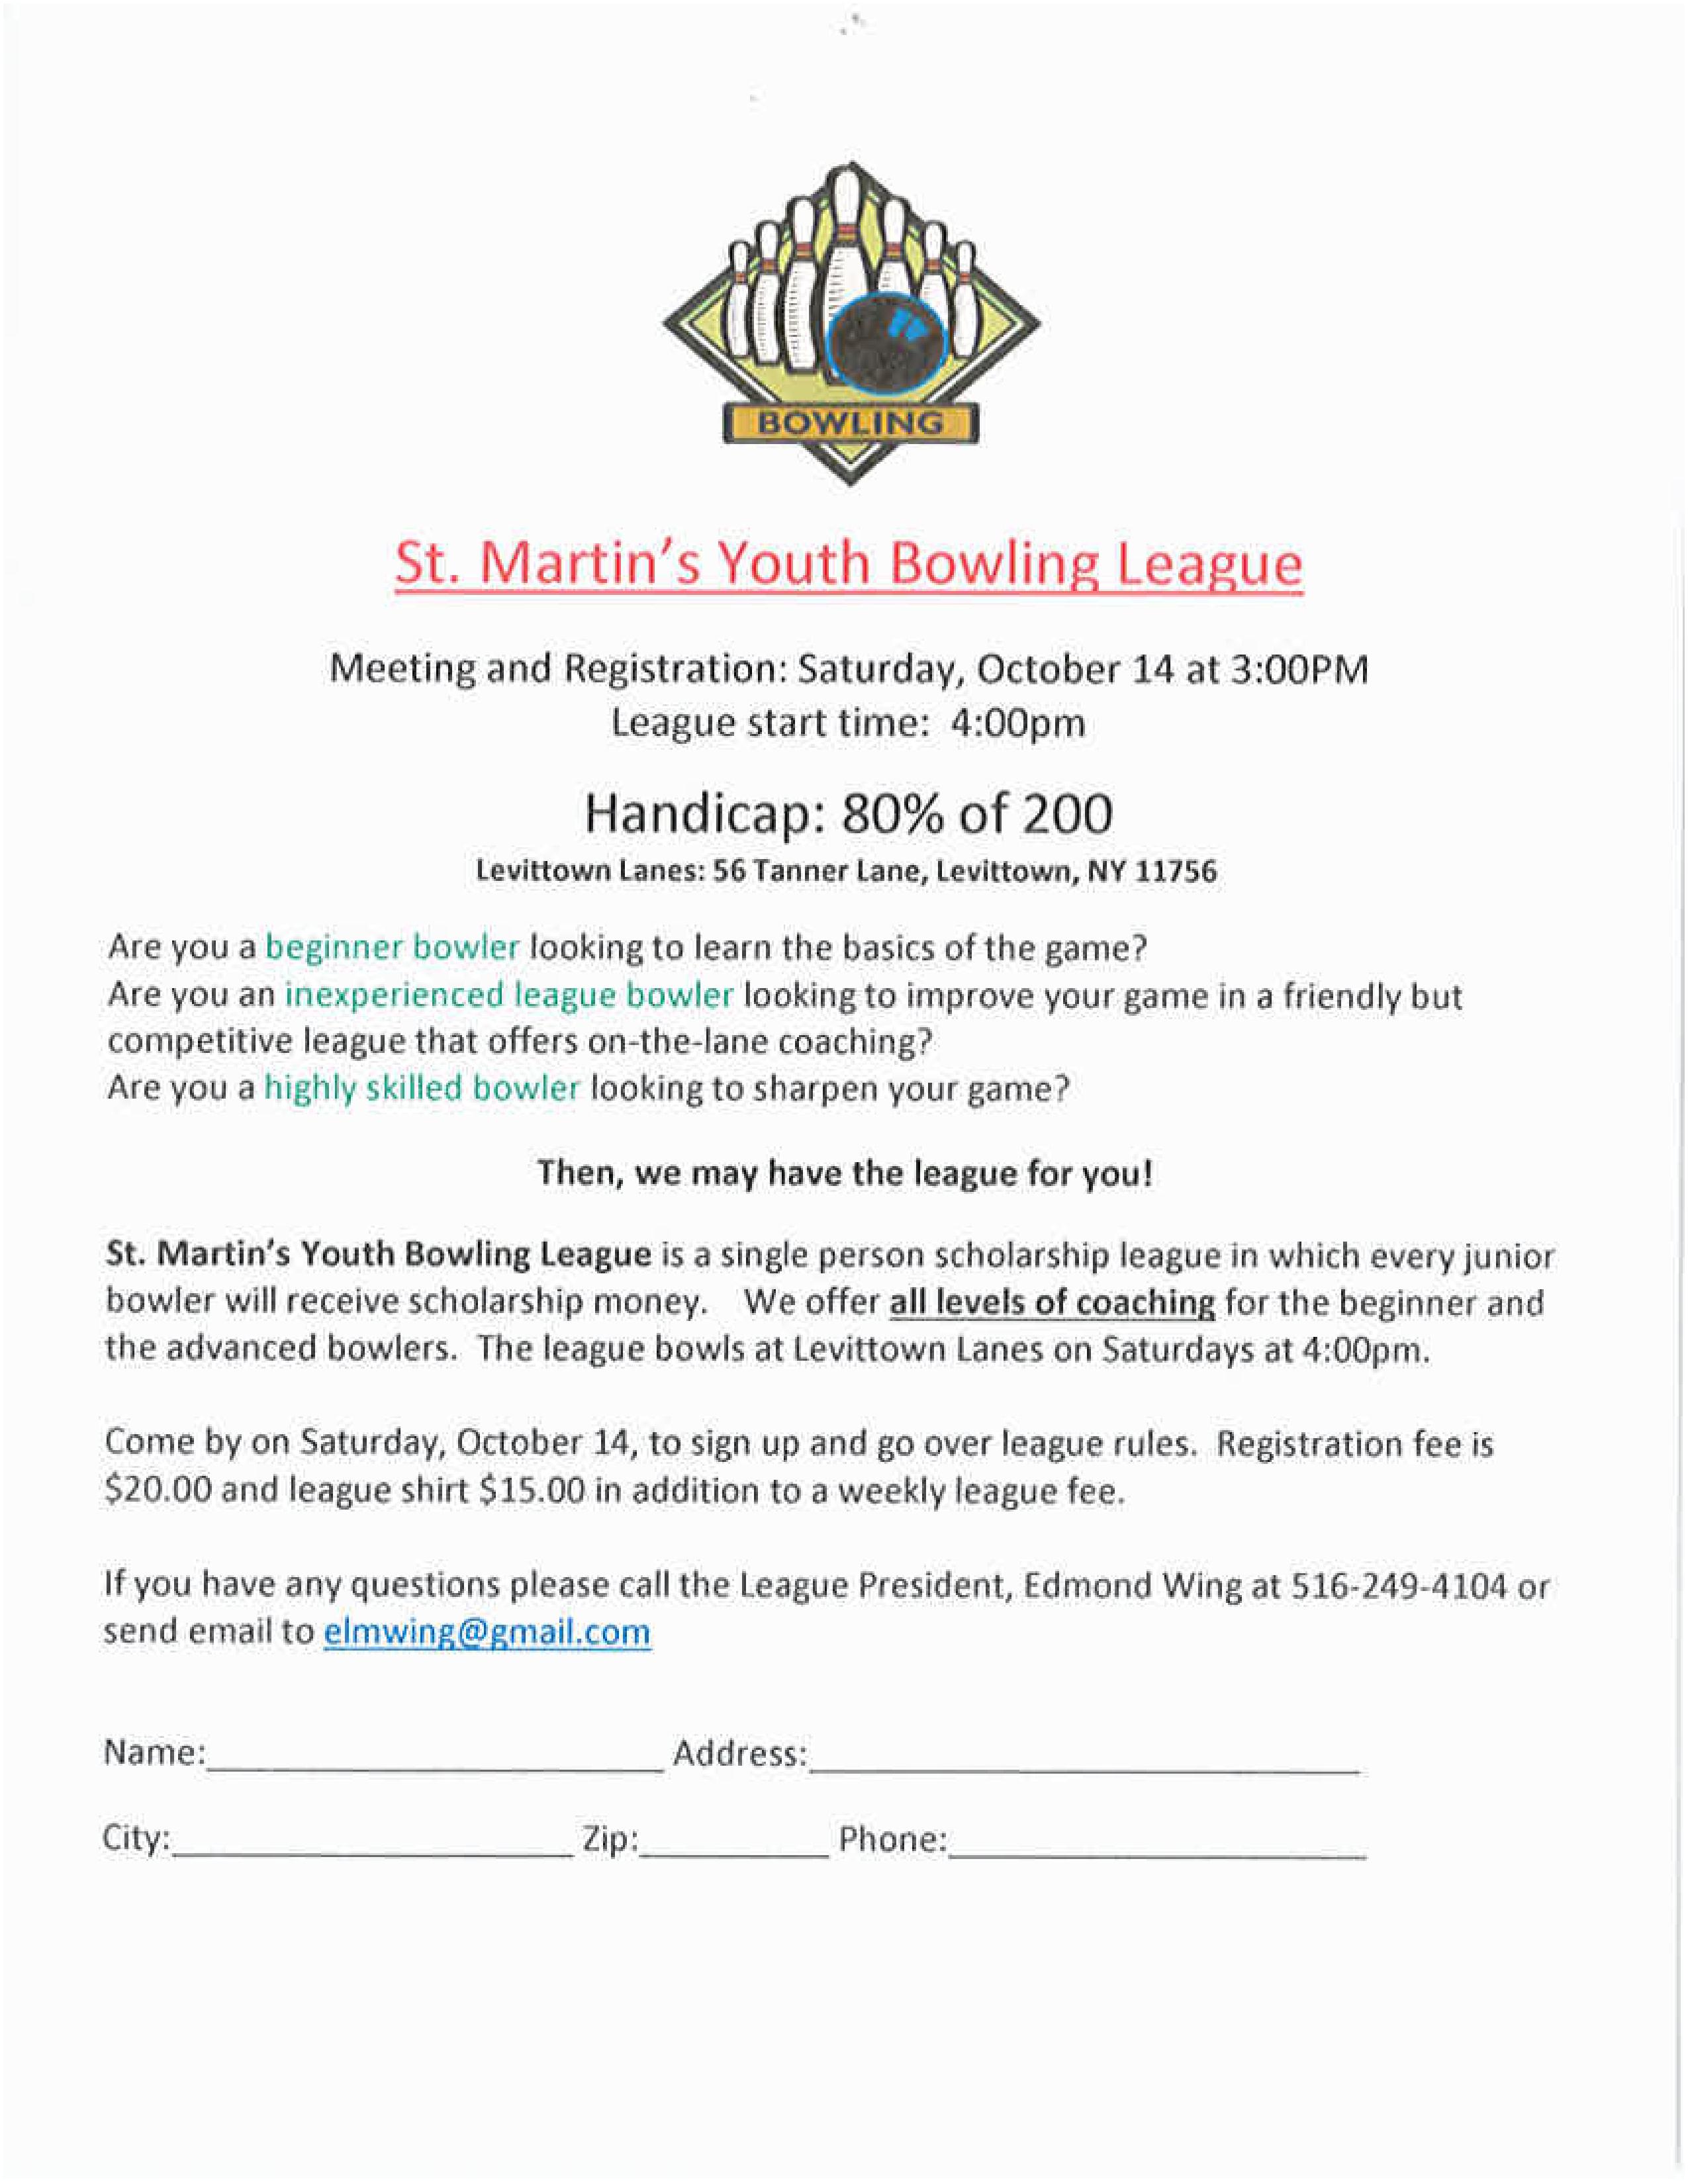 St Martin's Junior Scholarship League starts soon